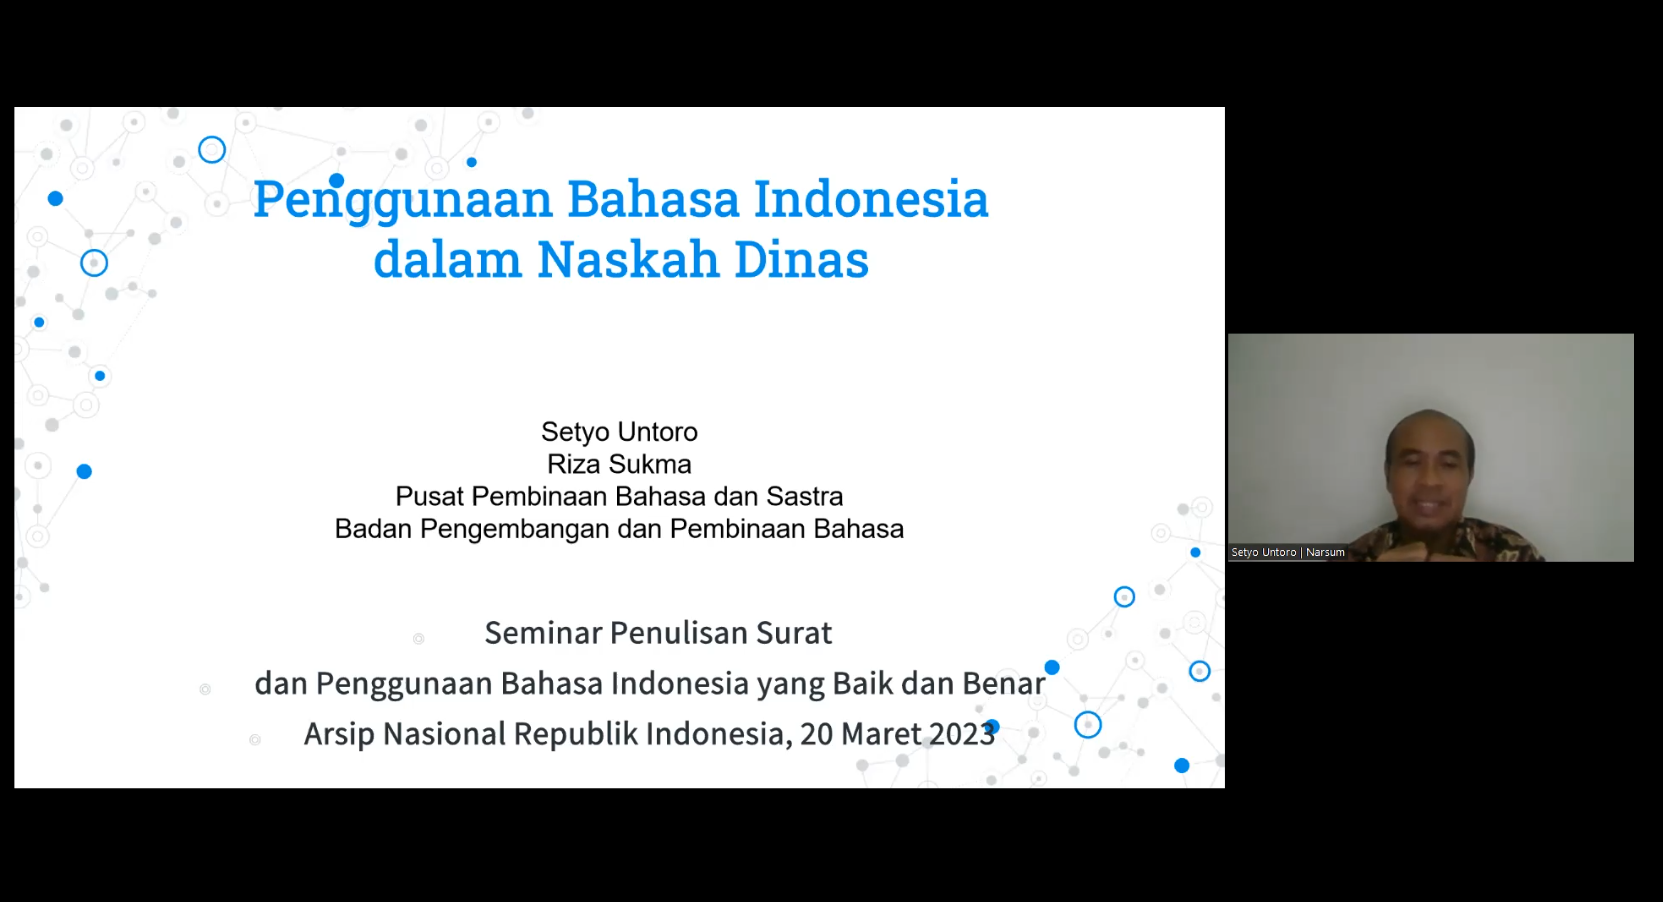 Seminar Penulisan Surat dan Penggunaan Bahasa Indonesia yang Baik dan Benar